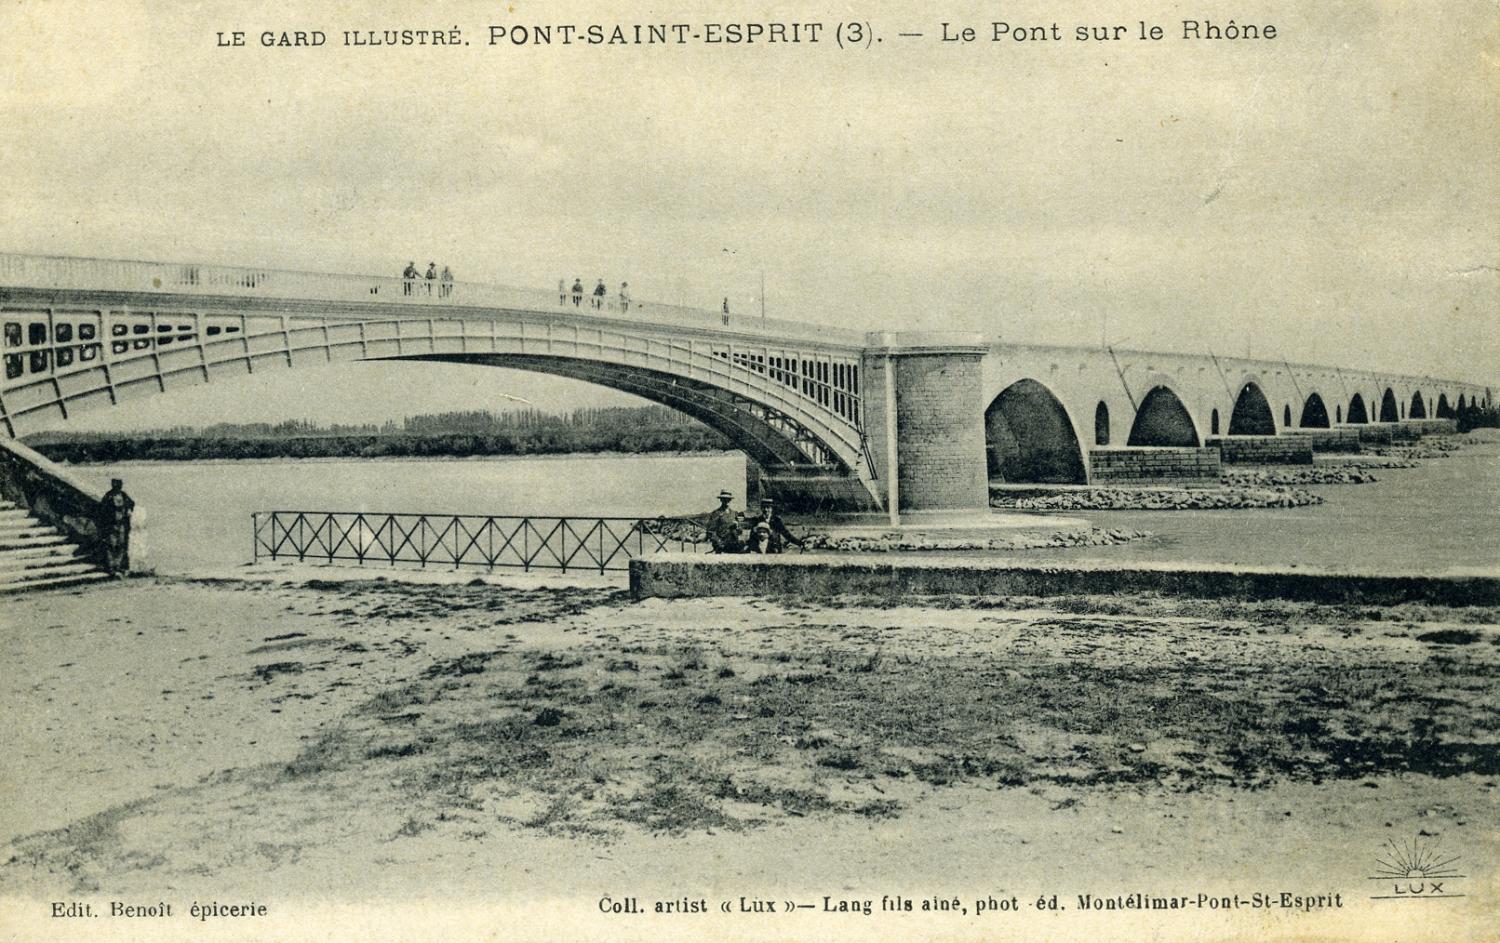 Le Gard illustré. Pont-Saint-Esprit